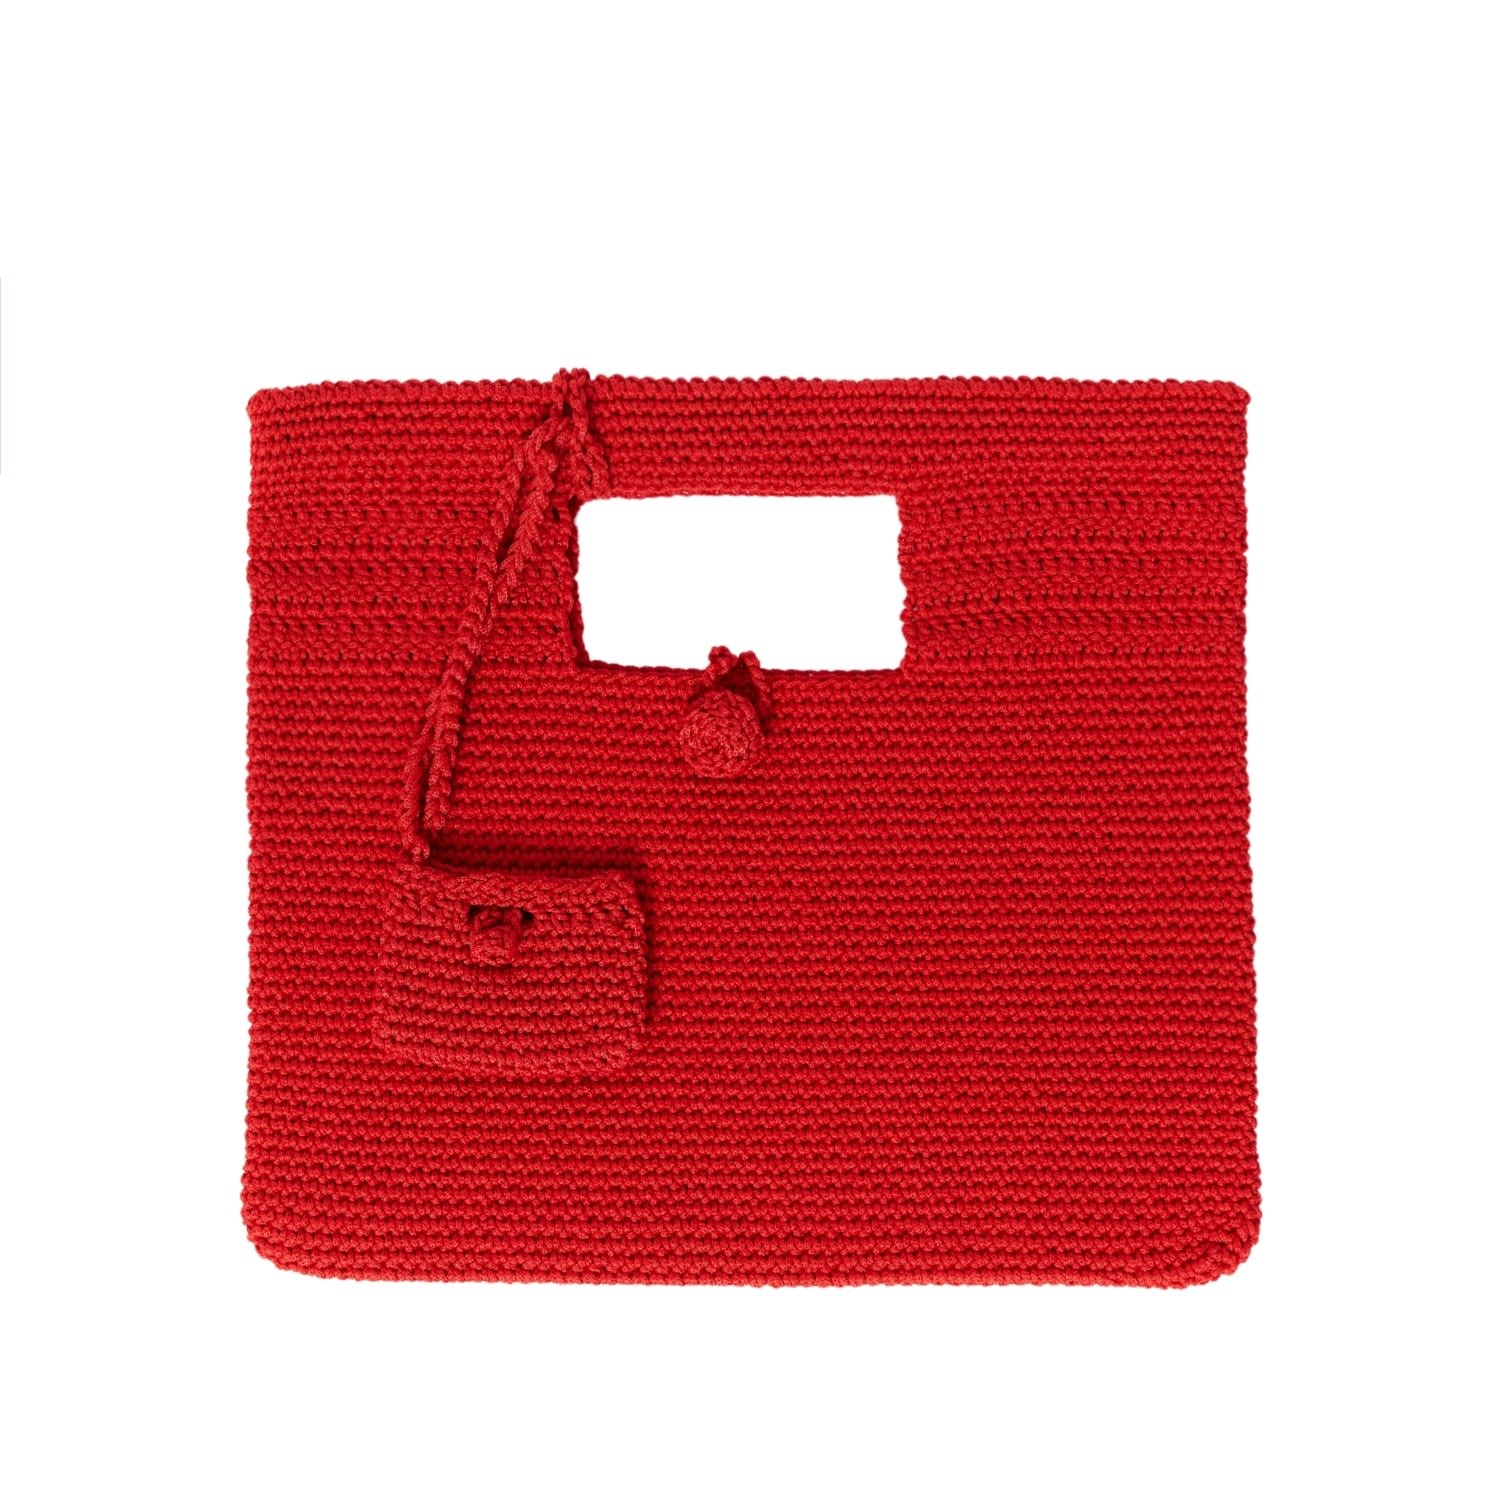 Women’s Santorini Crochet Bag In Red N’onat